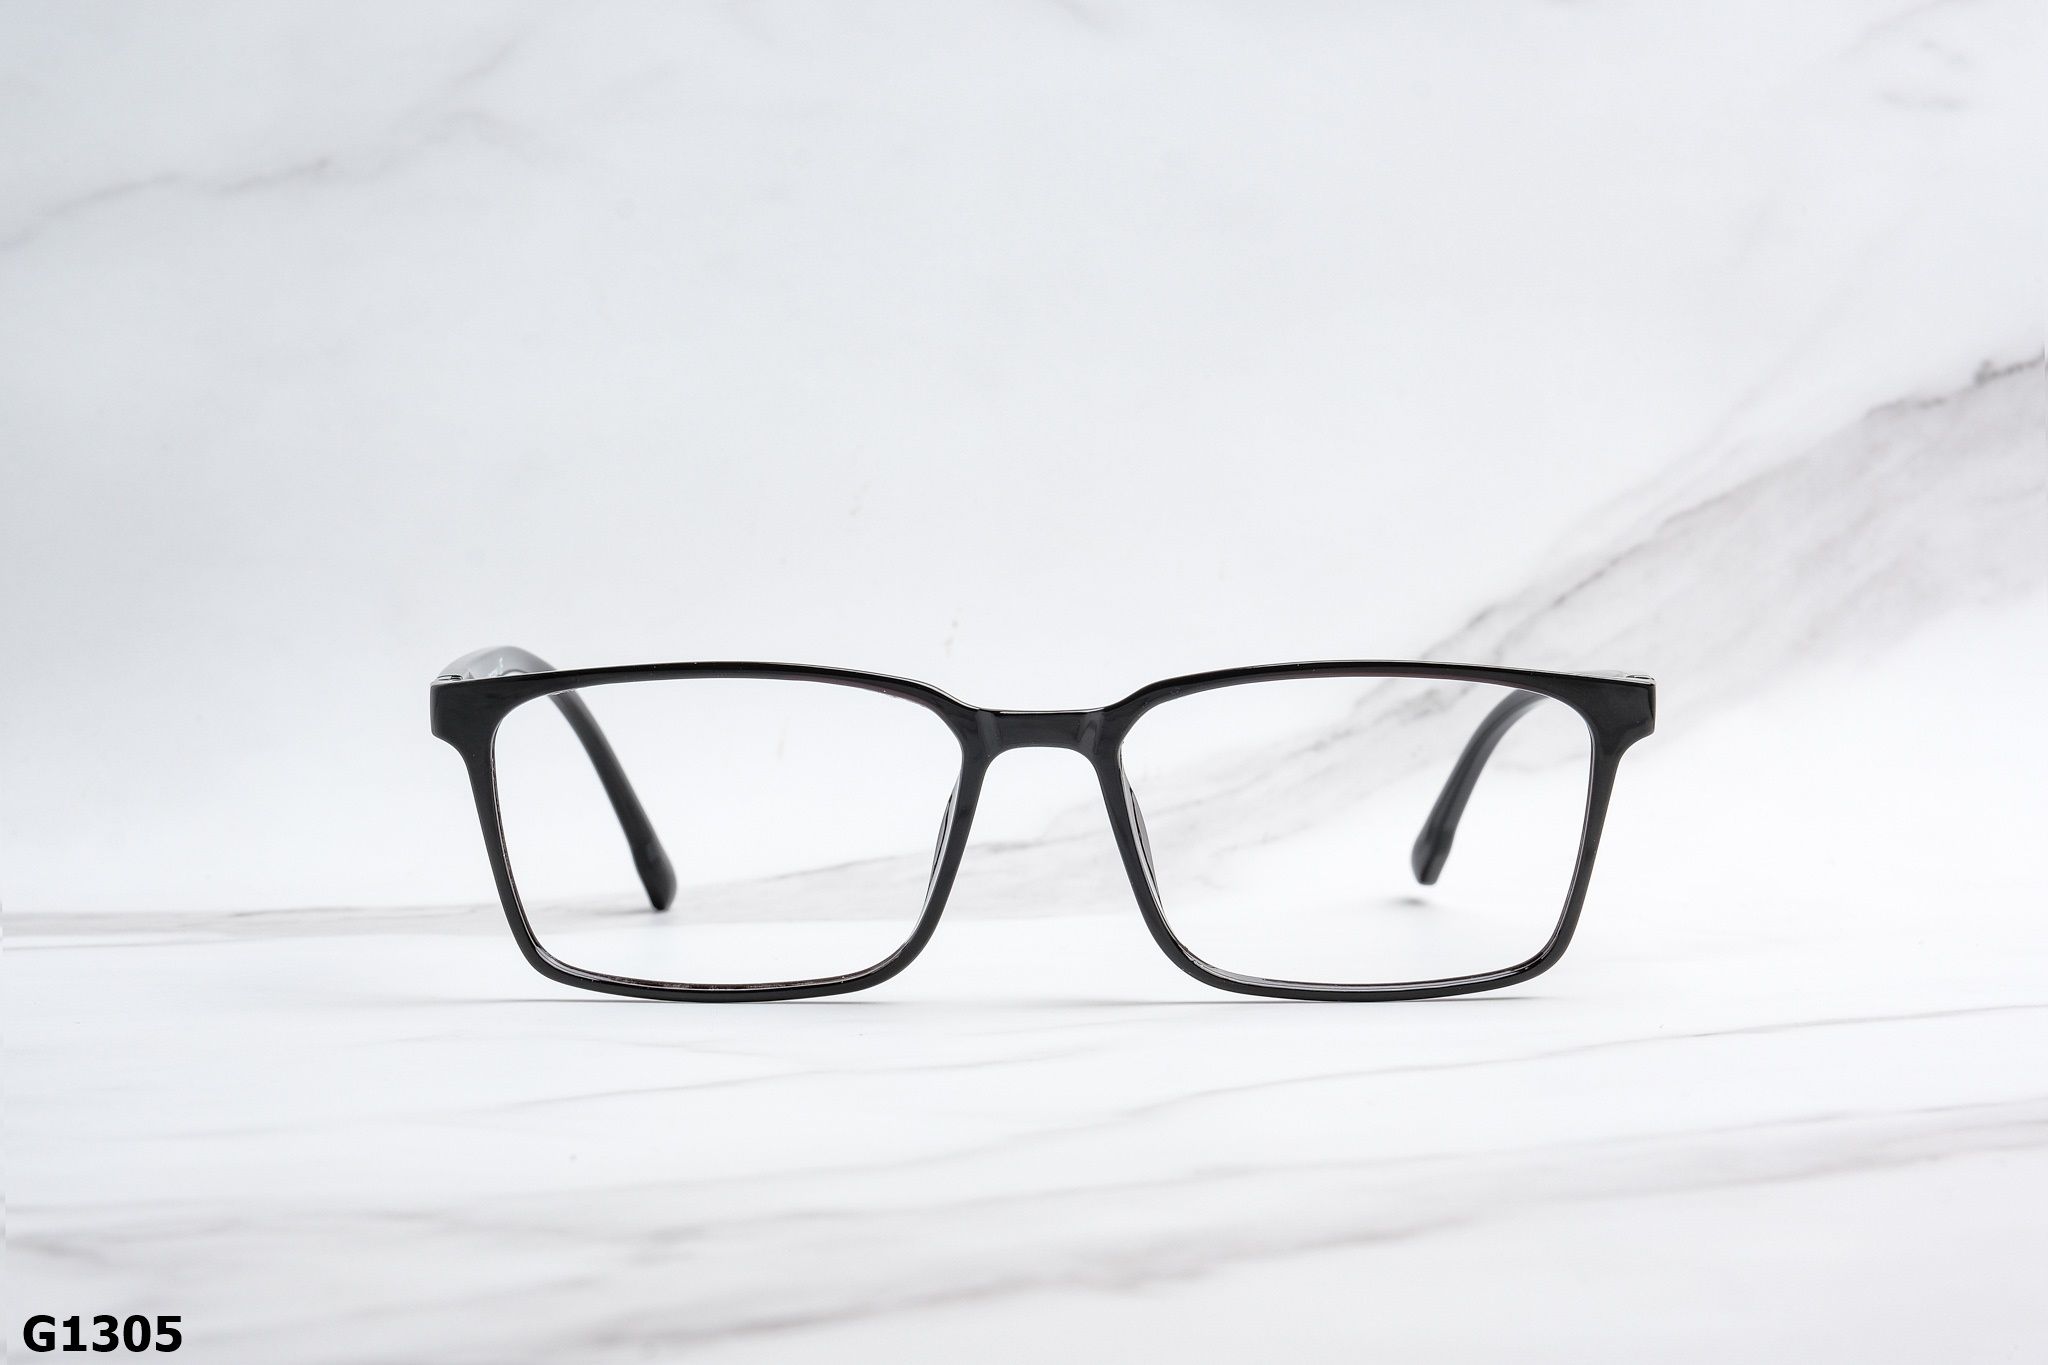  Rex-ton Eyewear - Glasses - G1305 